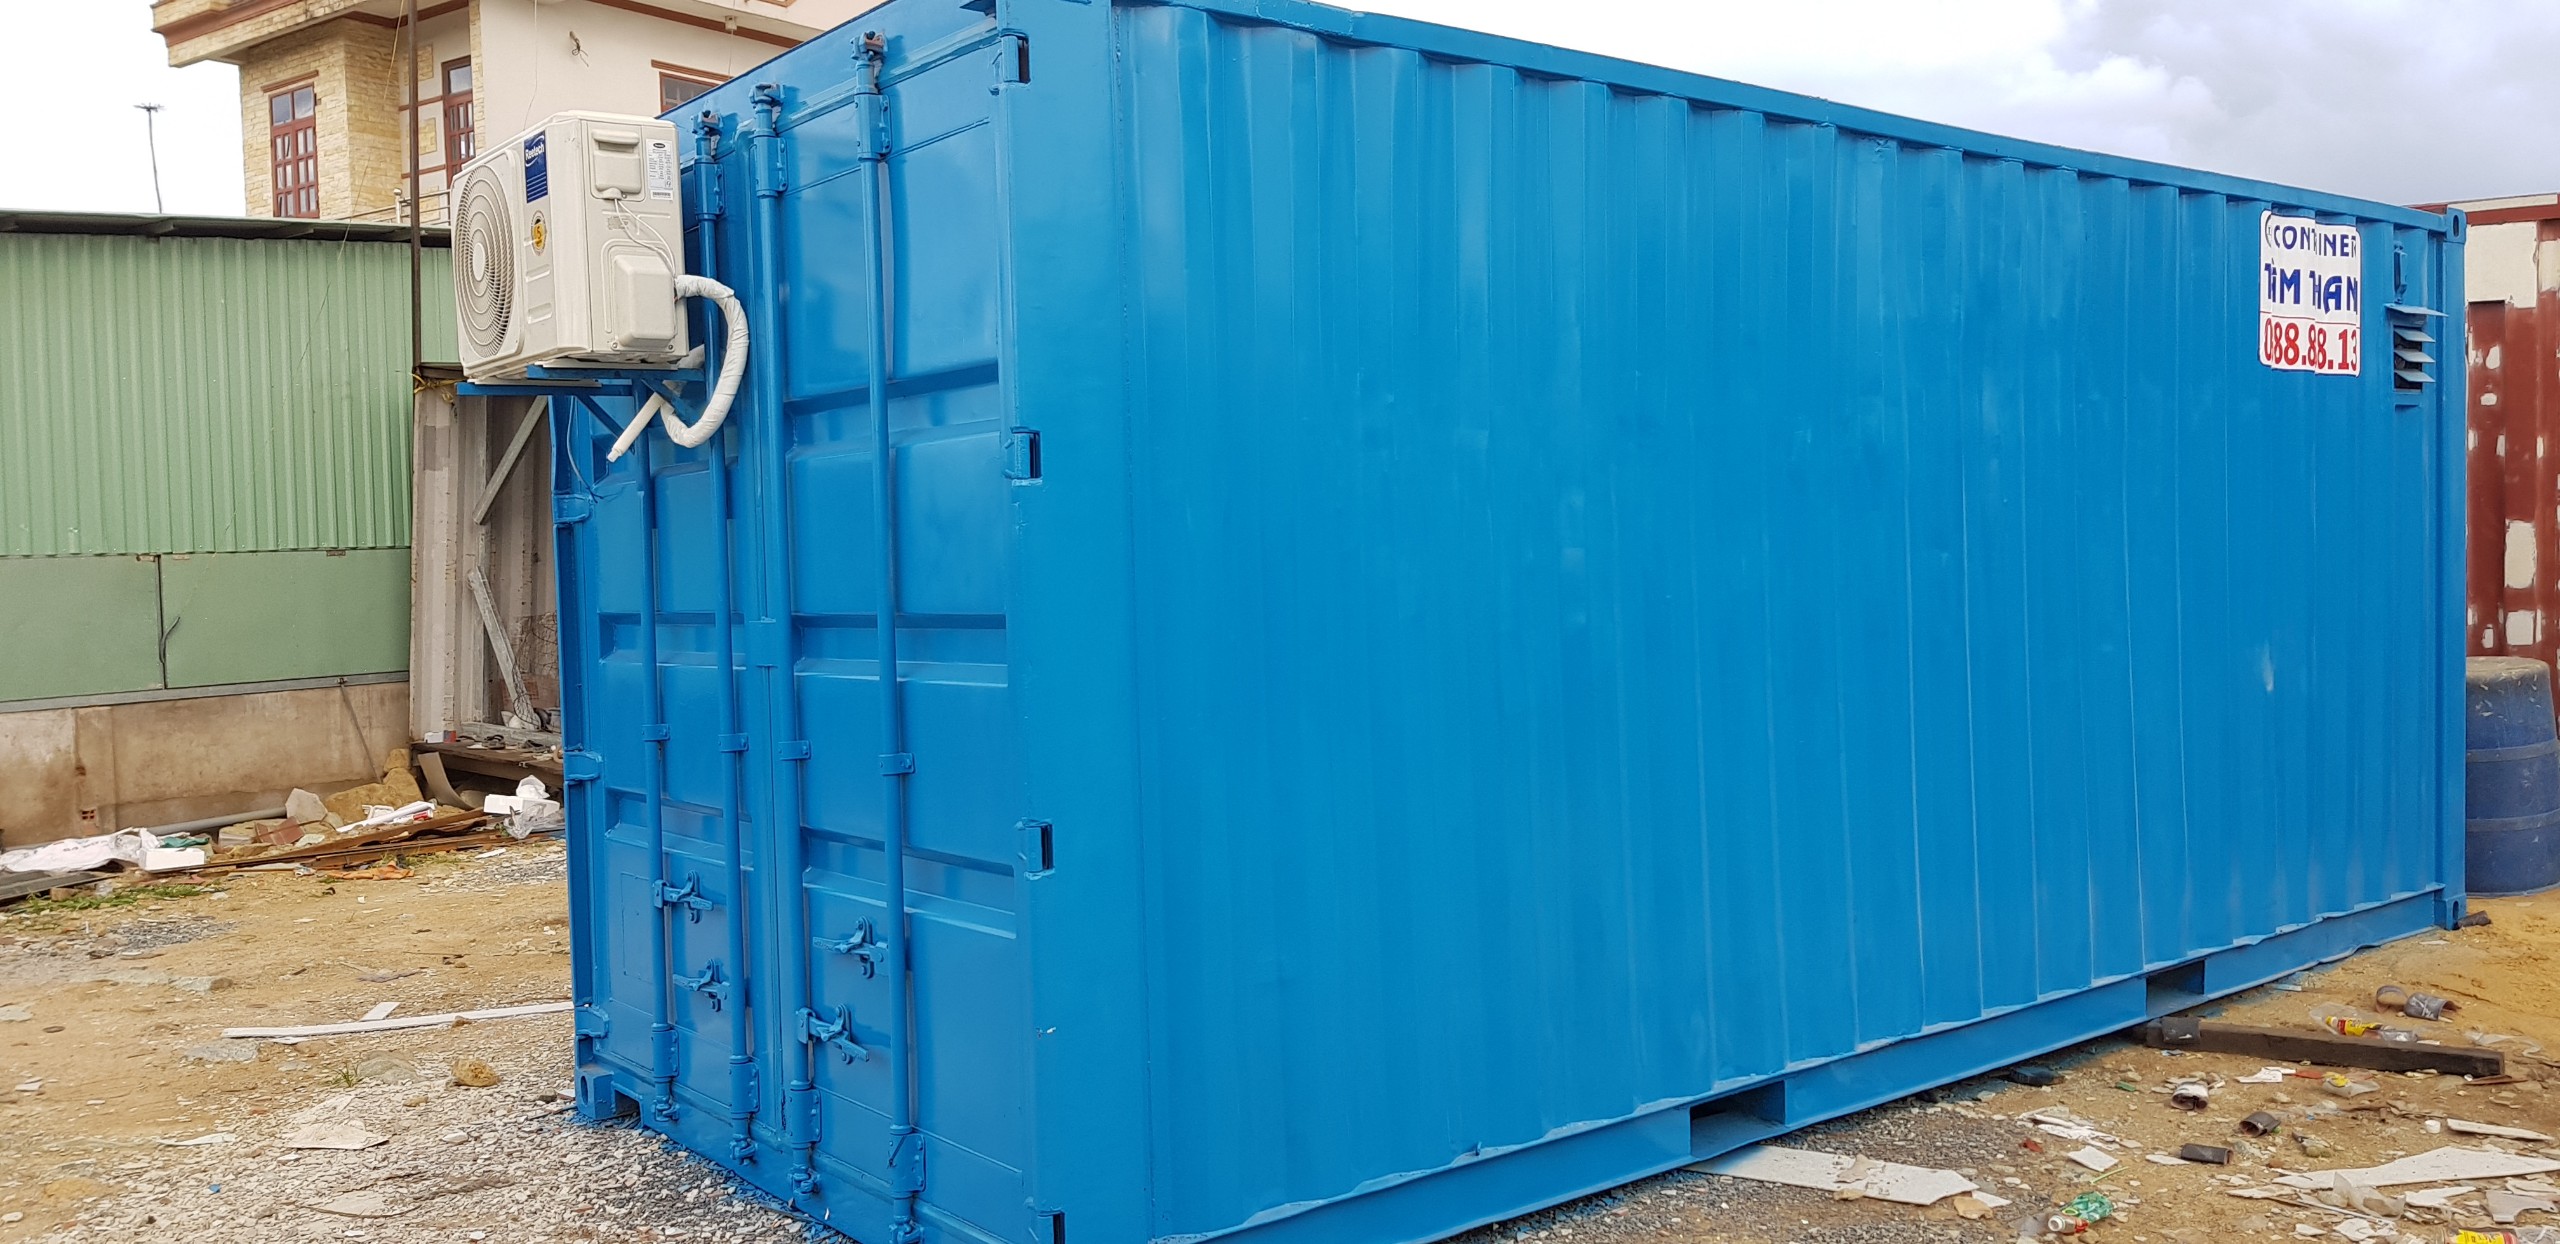 Hình ảnh nổi bật Tâm Thanh container gia công, cung cấp trên thị trường.